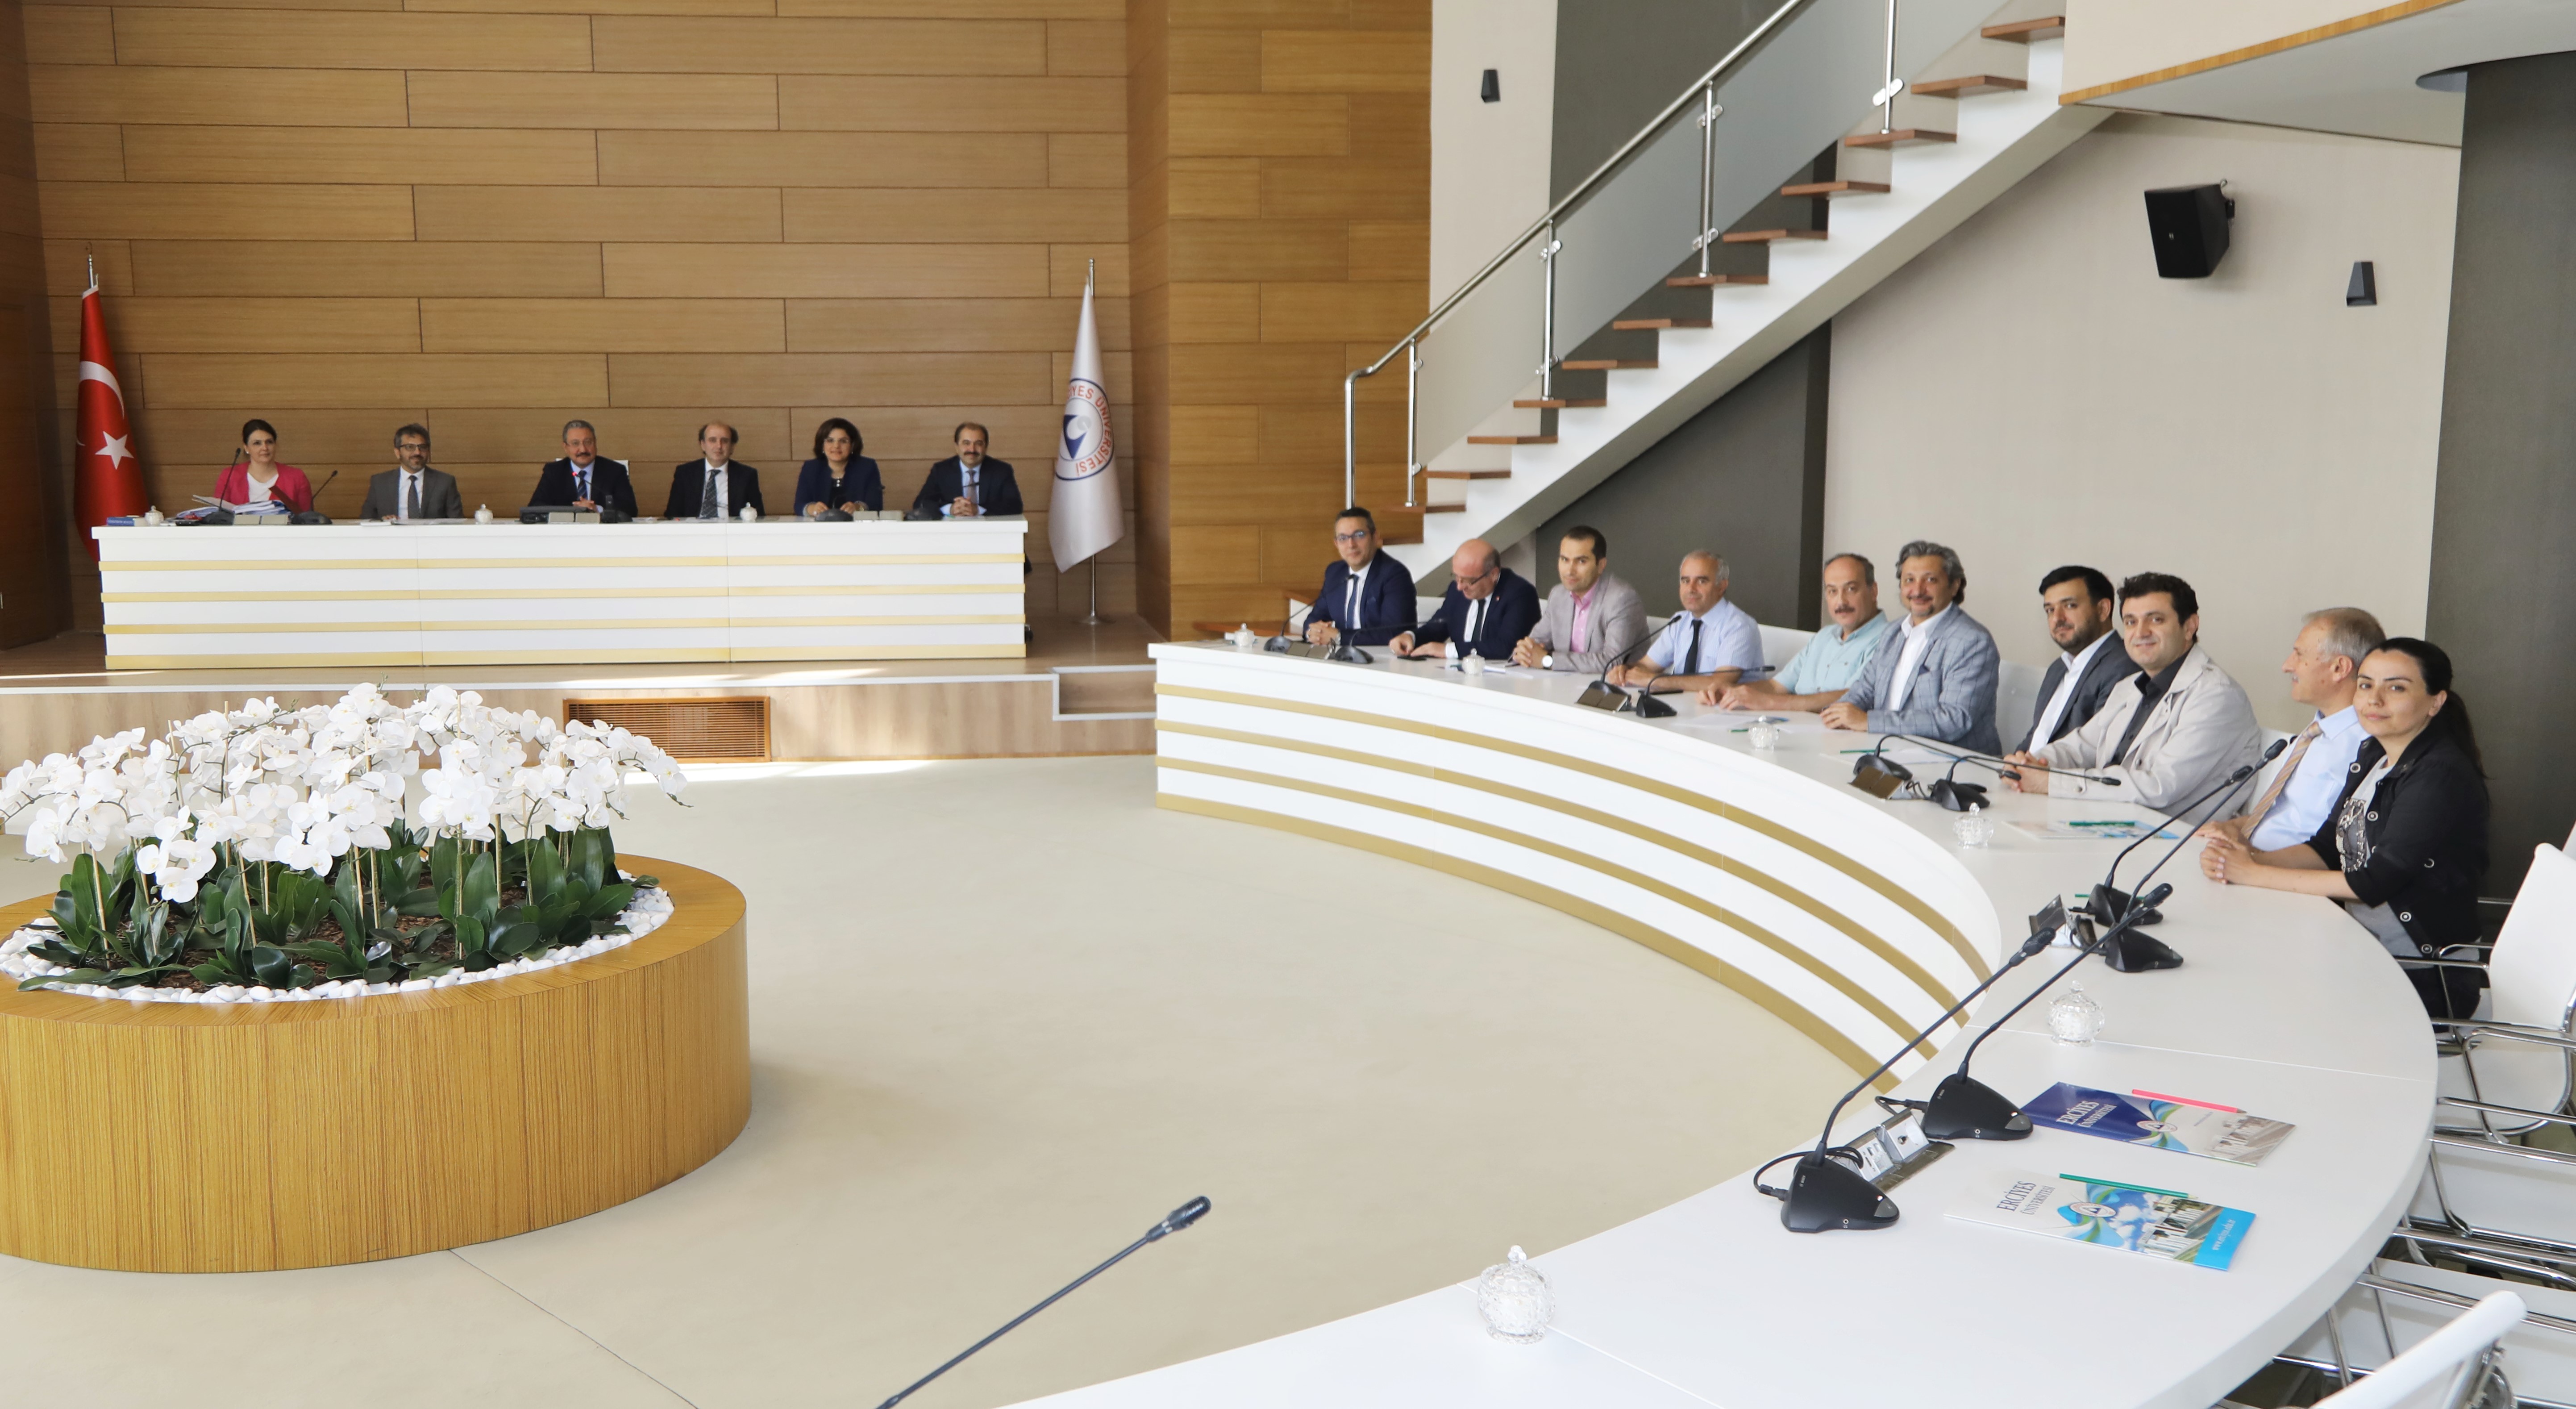 Kayseri Üniversitesi İlk Senato Toplantısını Yaptı